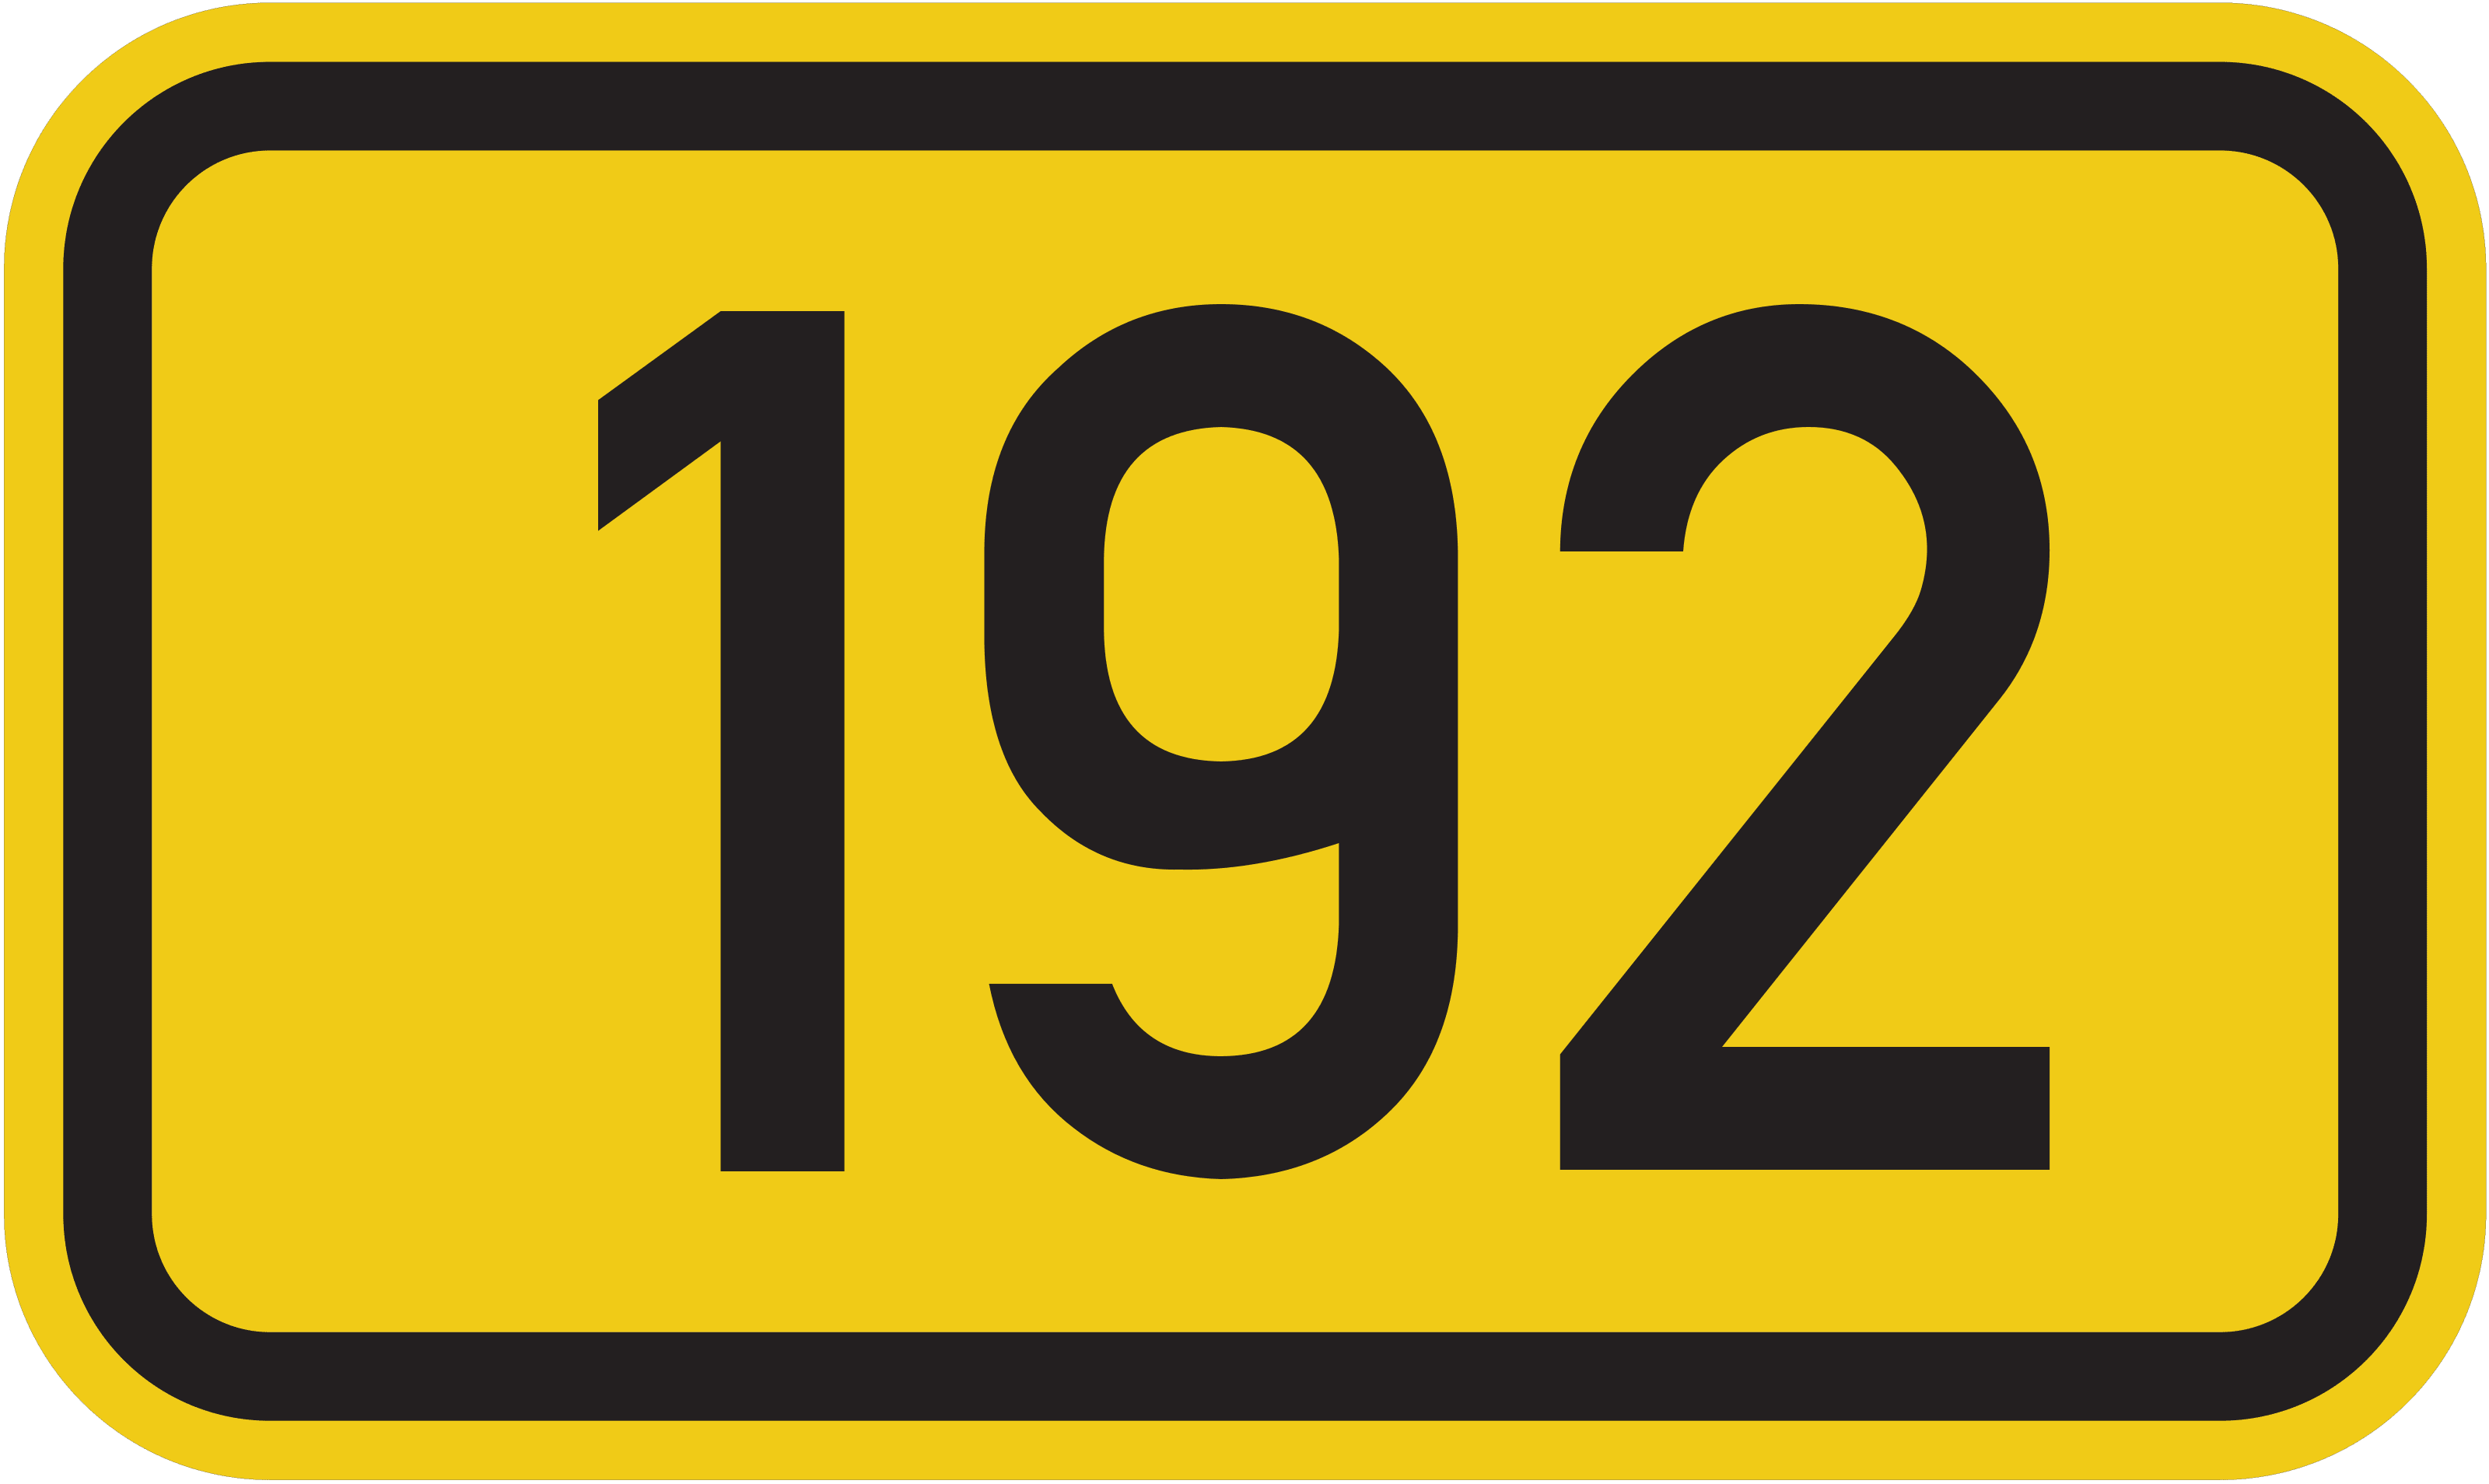 Bundesstraße B 192